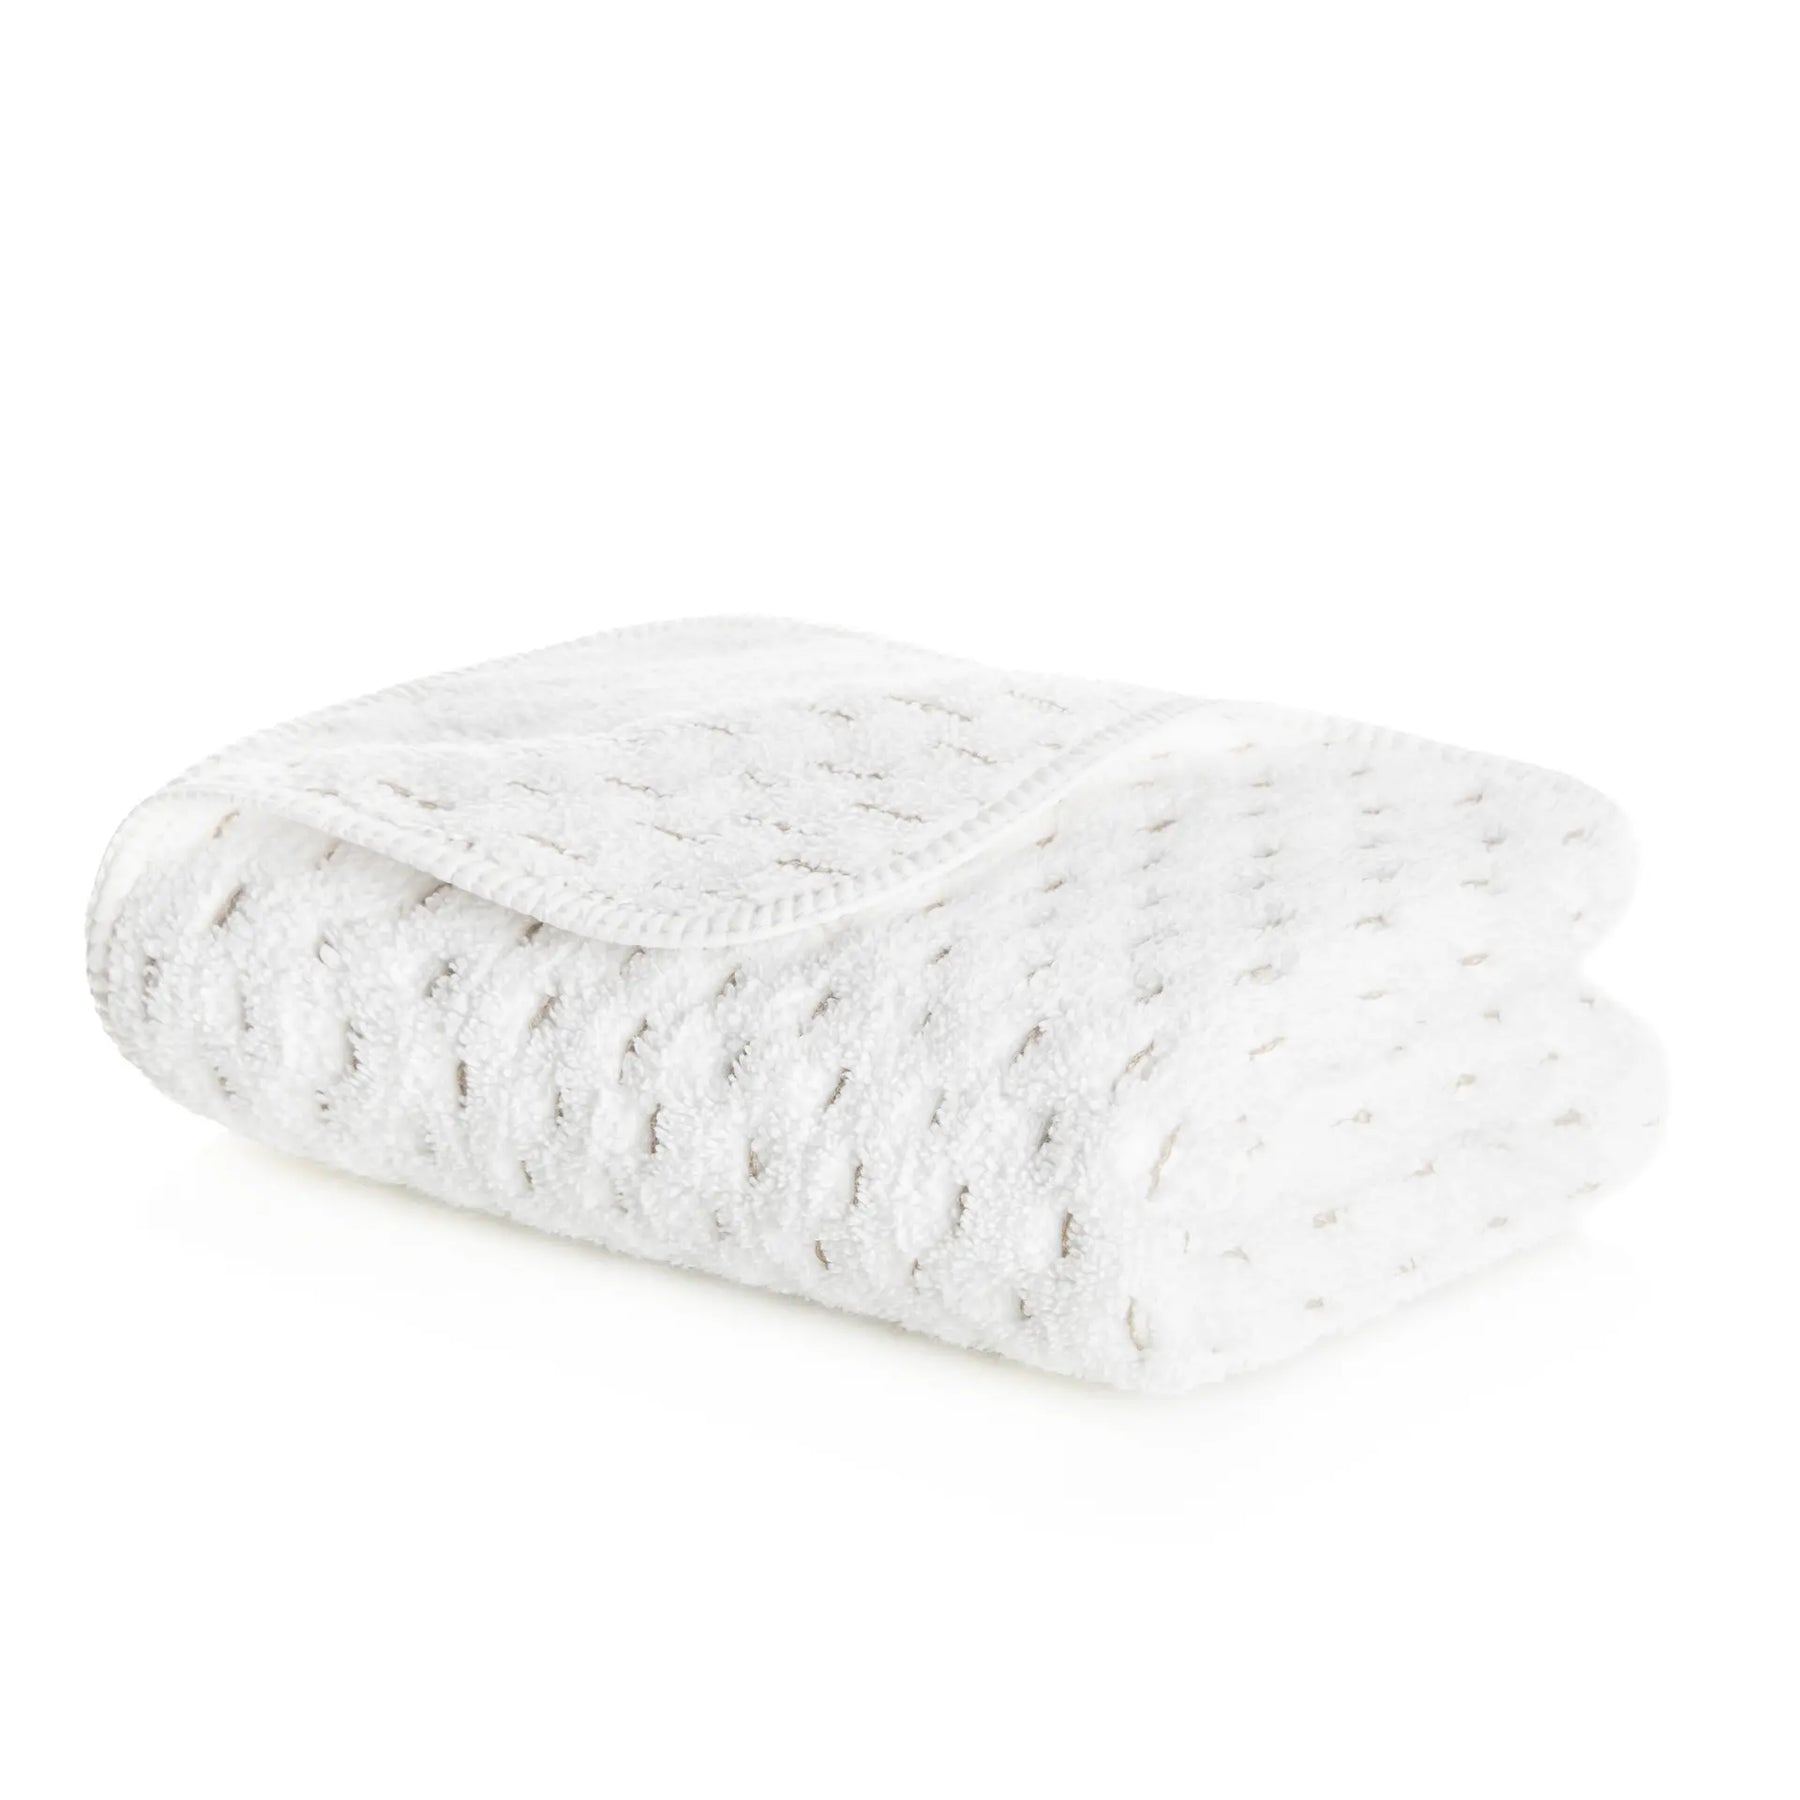 Graccioza Alice Towel in White